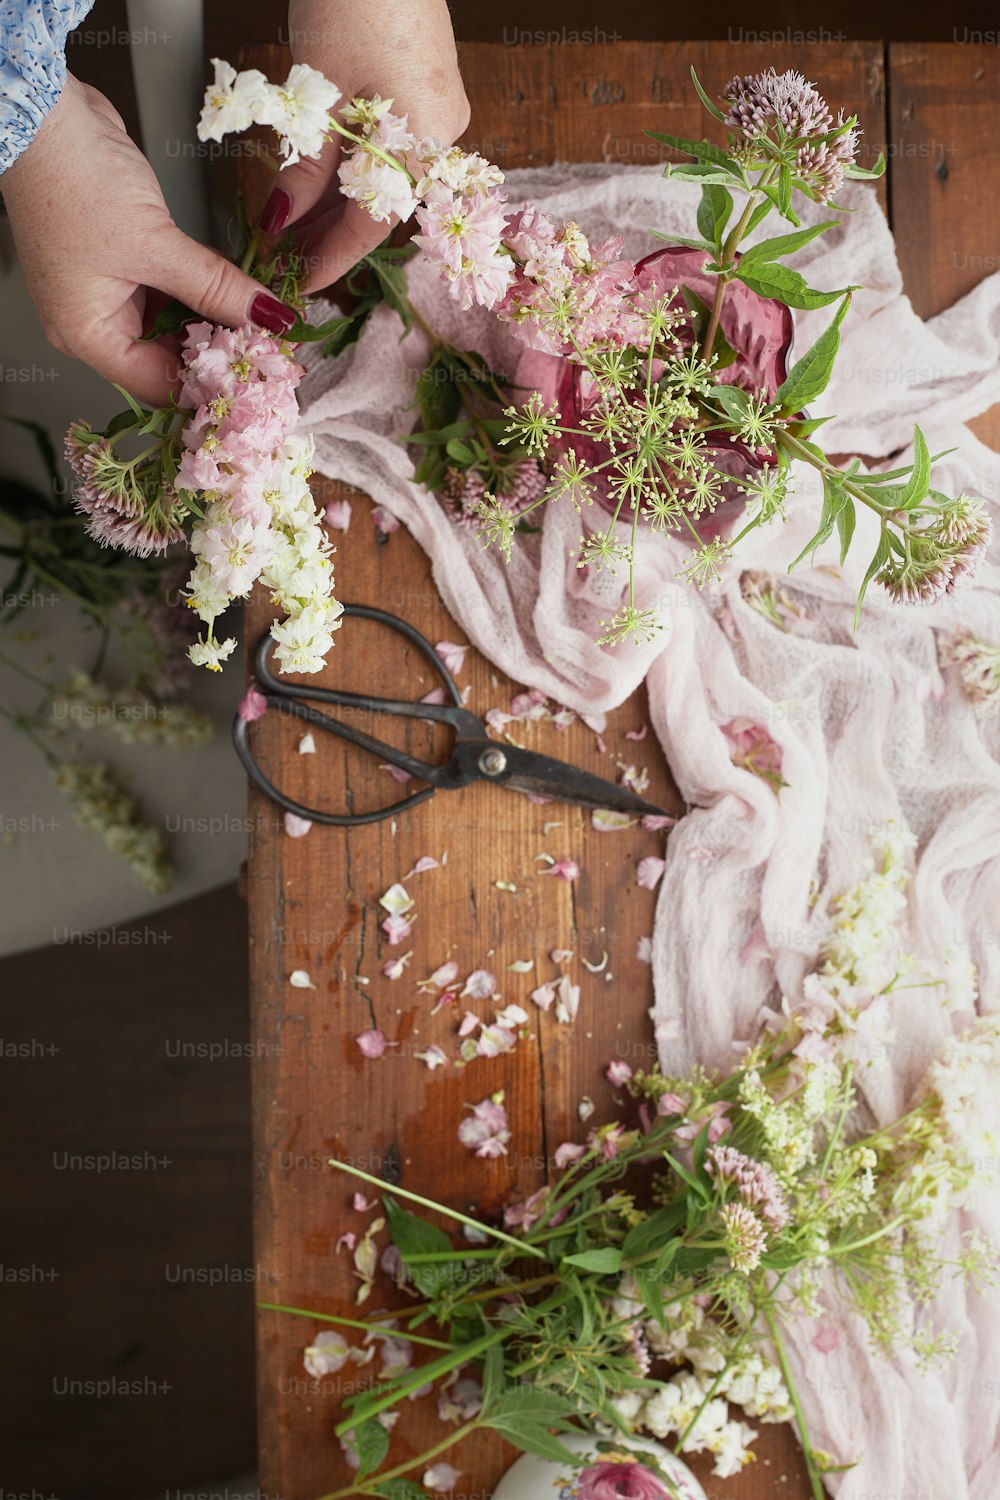 une personne coupant des fleurs avec une paire de ciseaux